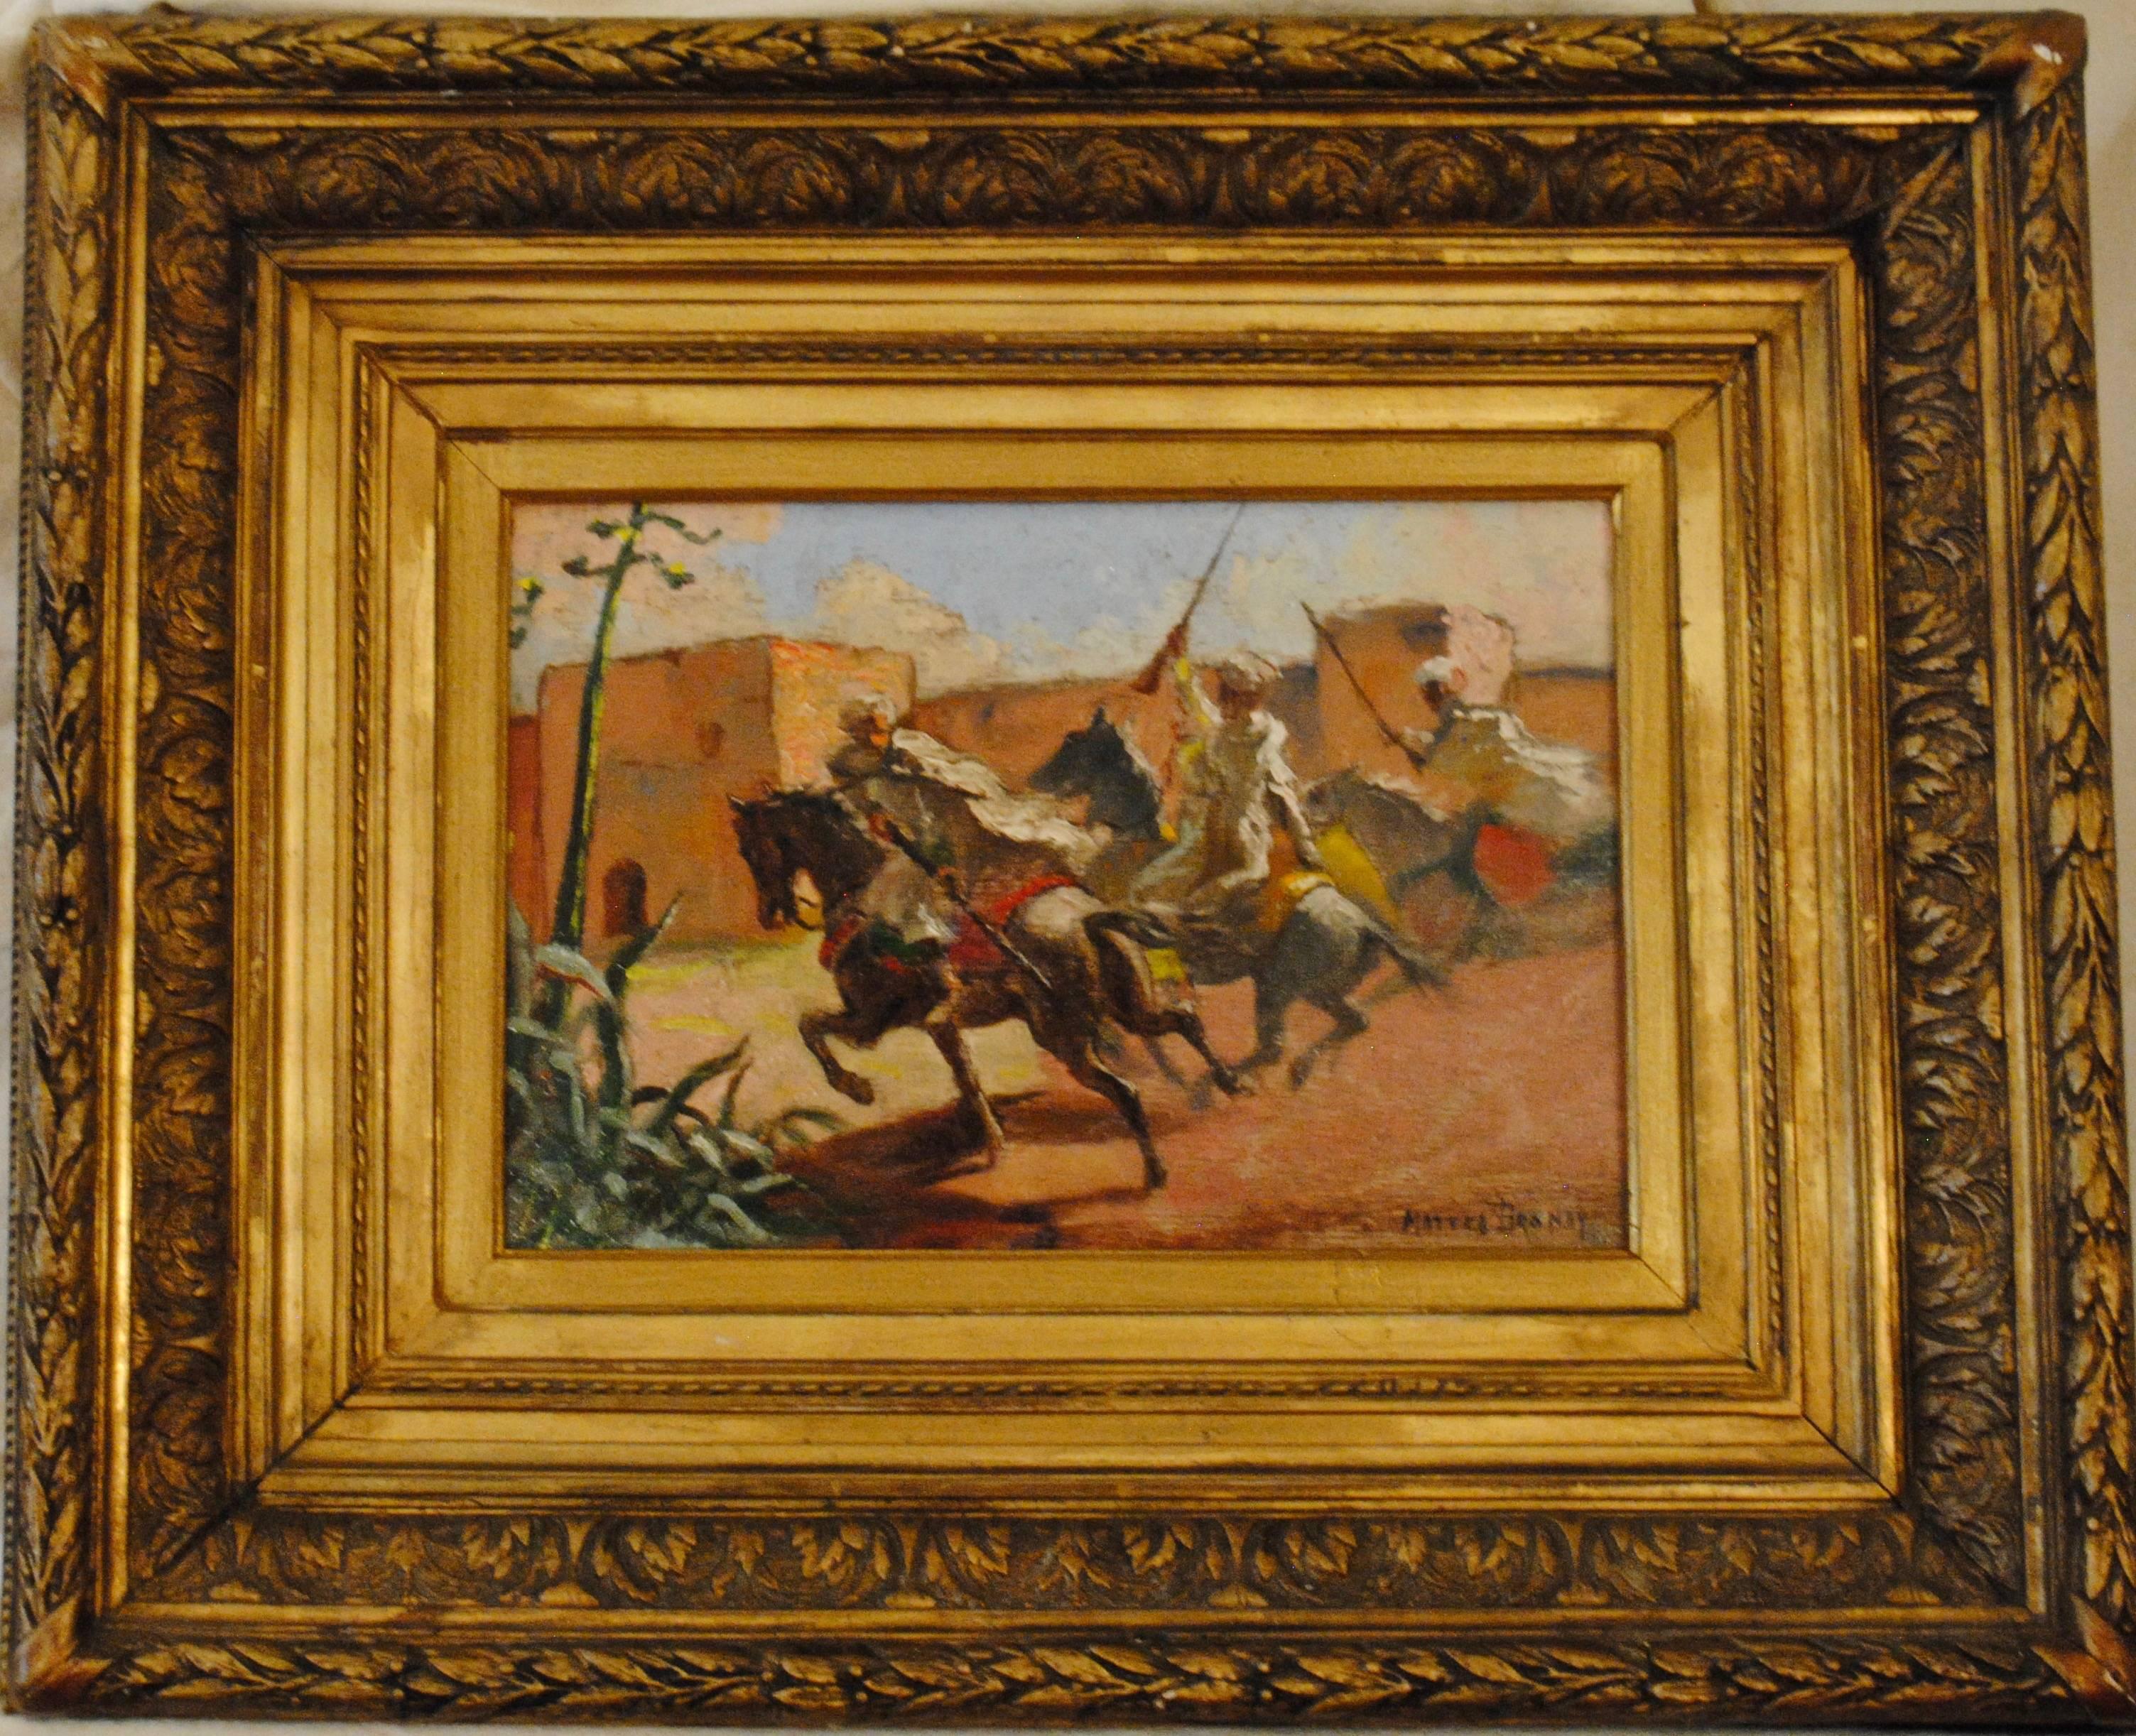 Cavaliers arabes aux murs de Marrakech (Arab Horsemen at the Walls of Marrakech) - Painting by Mattéo Brondy